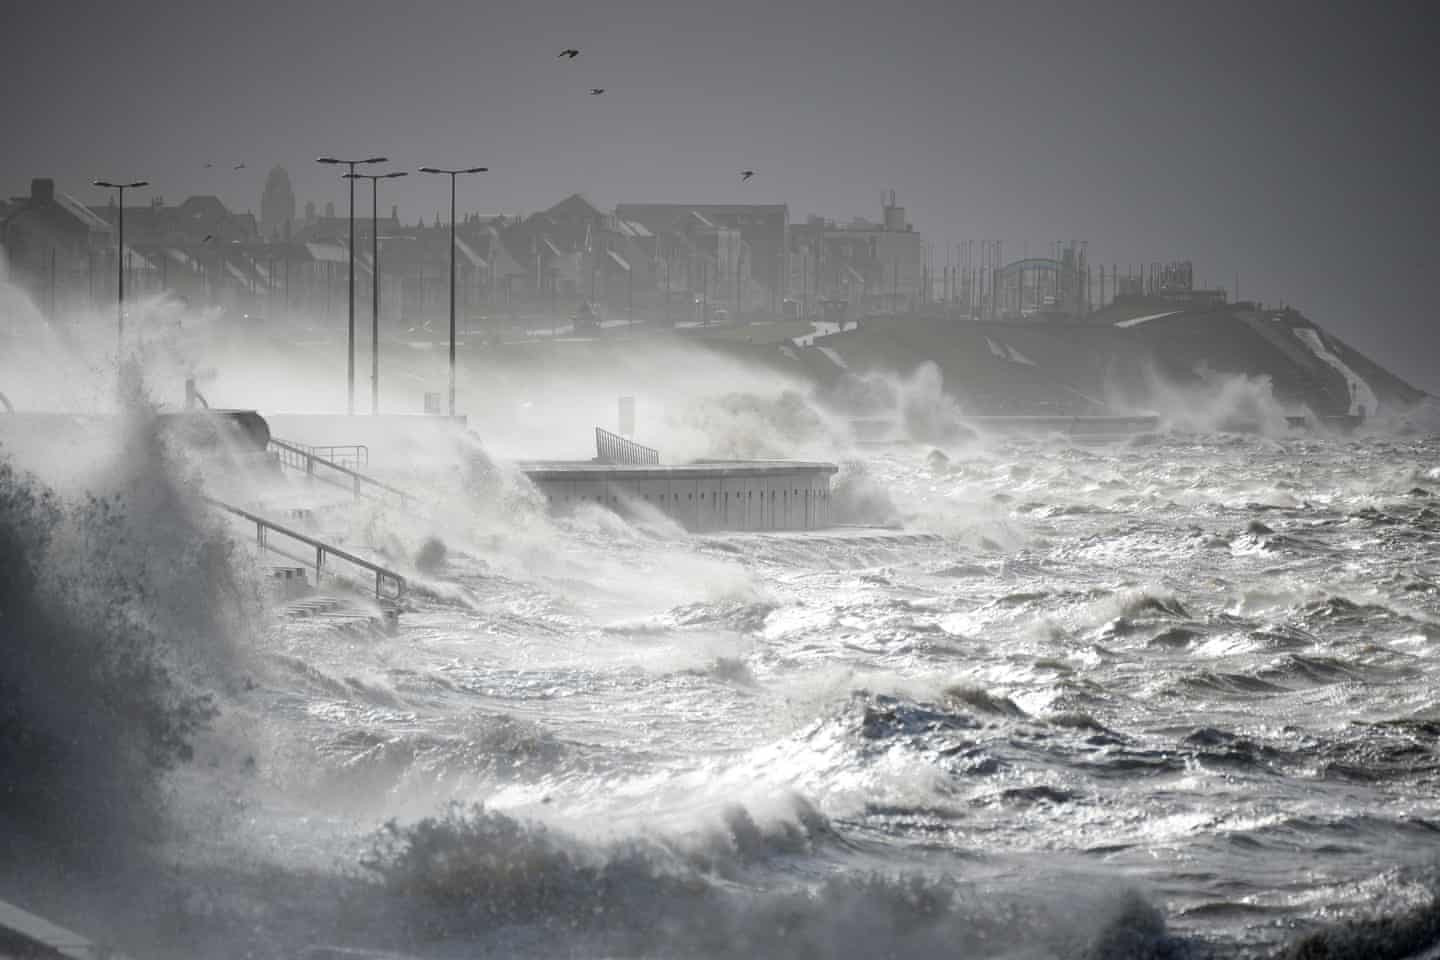 Sóng bão đánh sập lối đi dạo gần biển. Ảnh: Christopher Furlong / Getty Images.